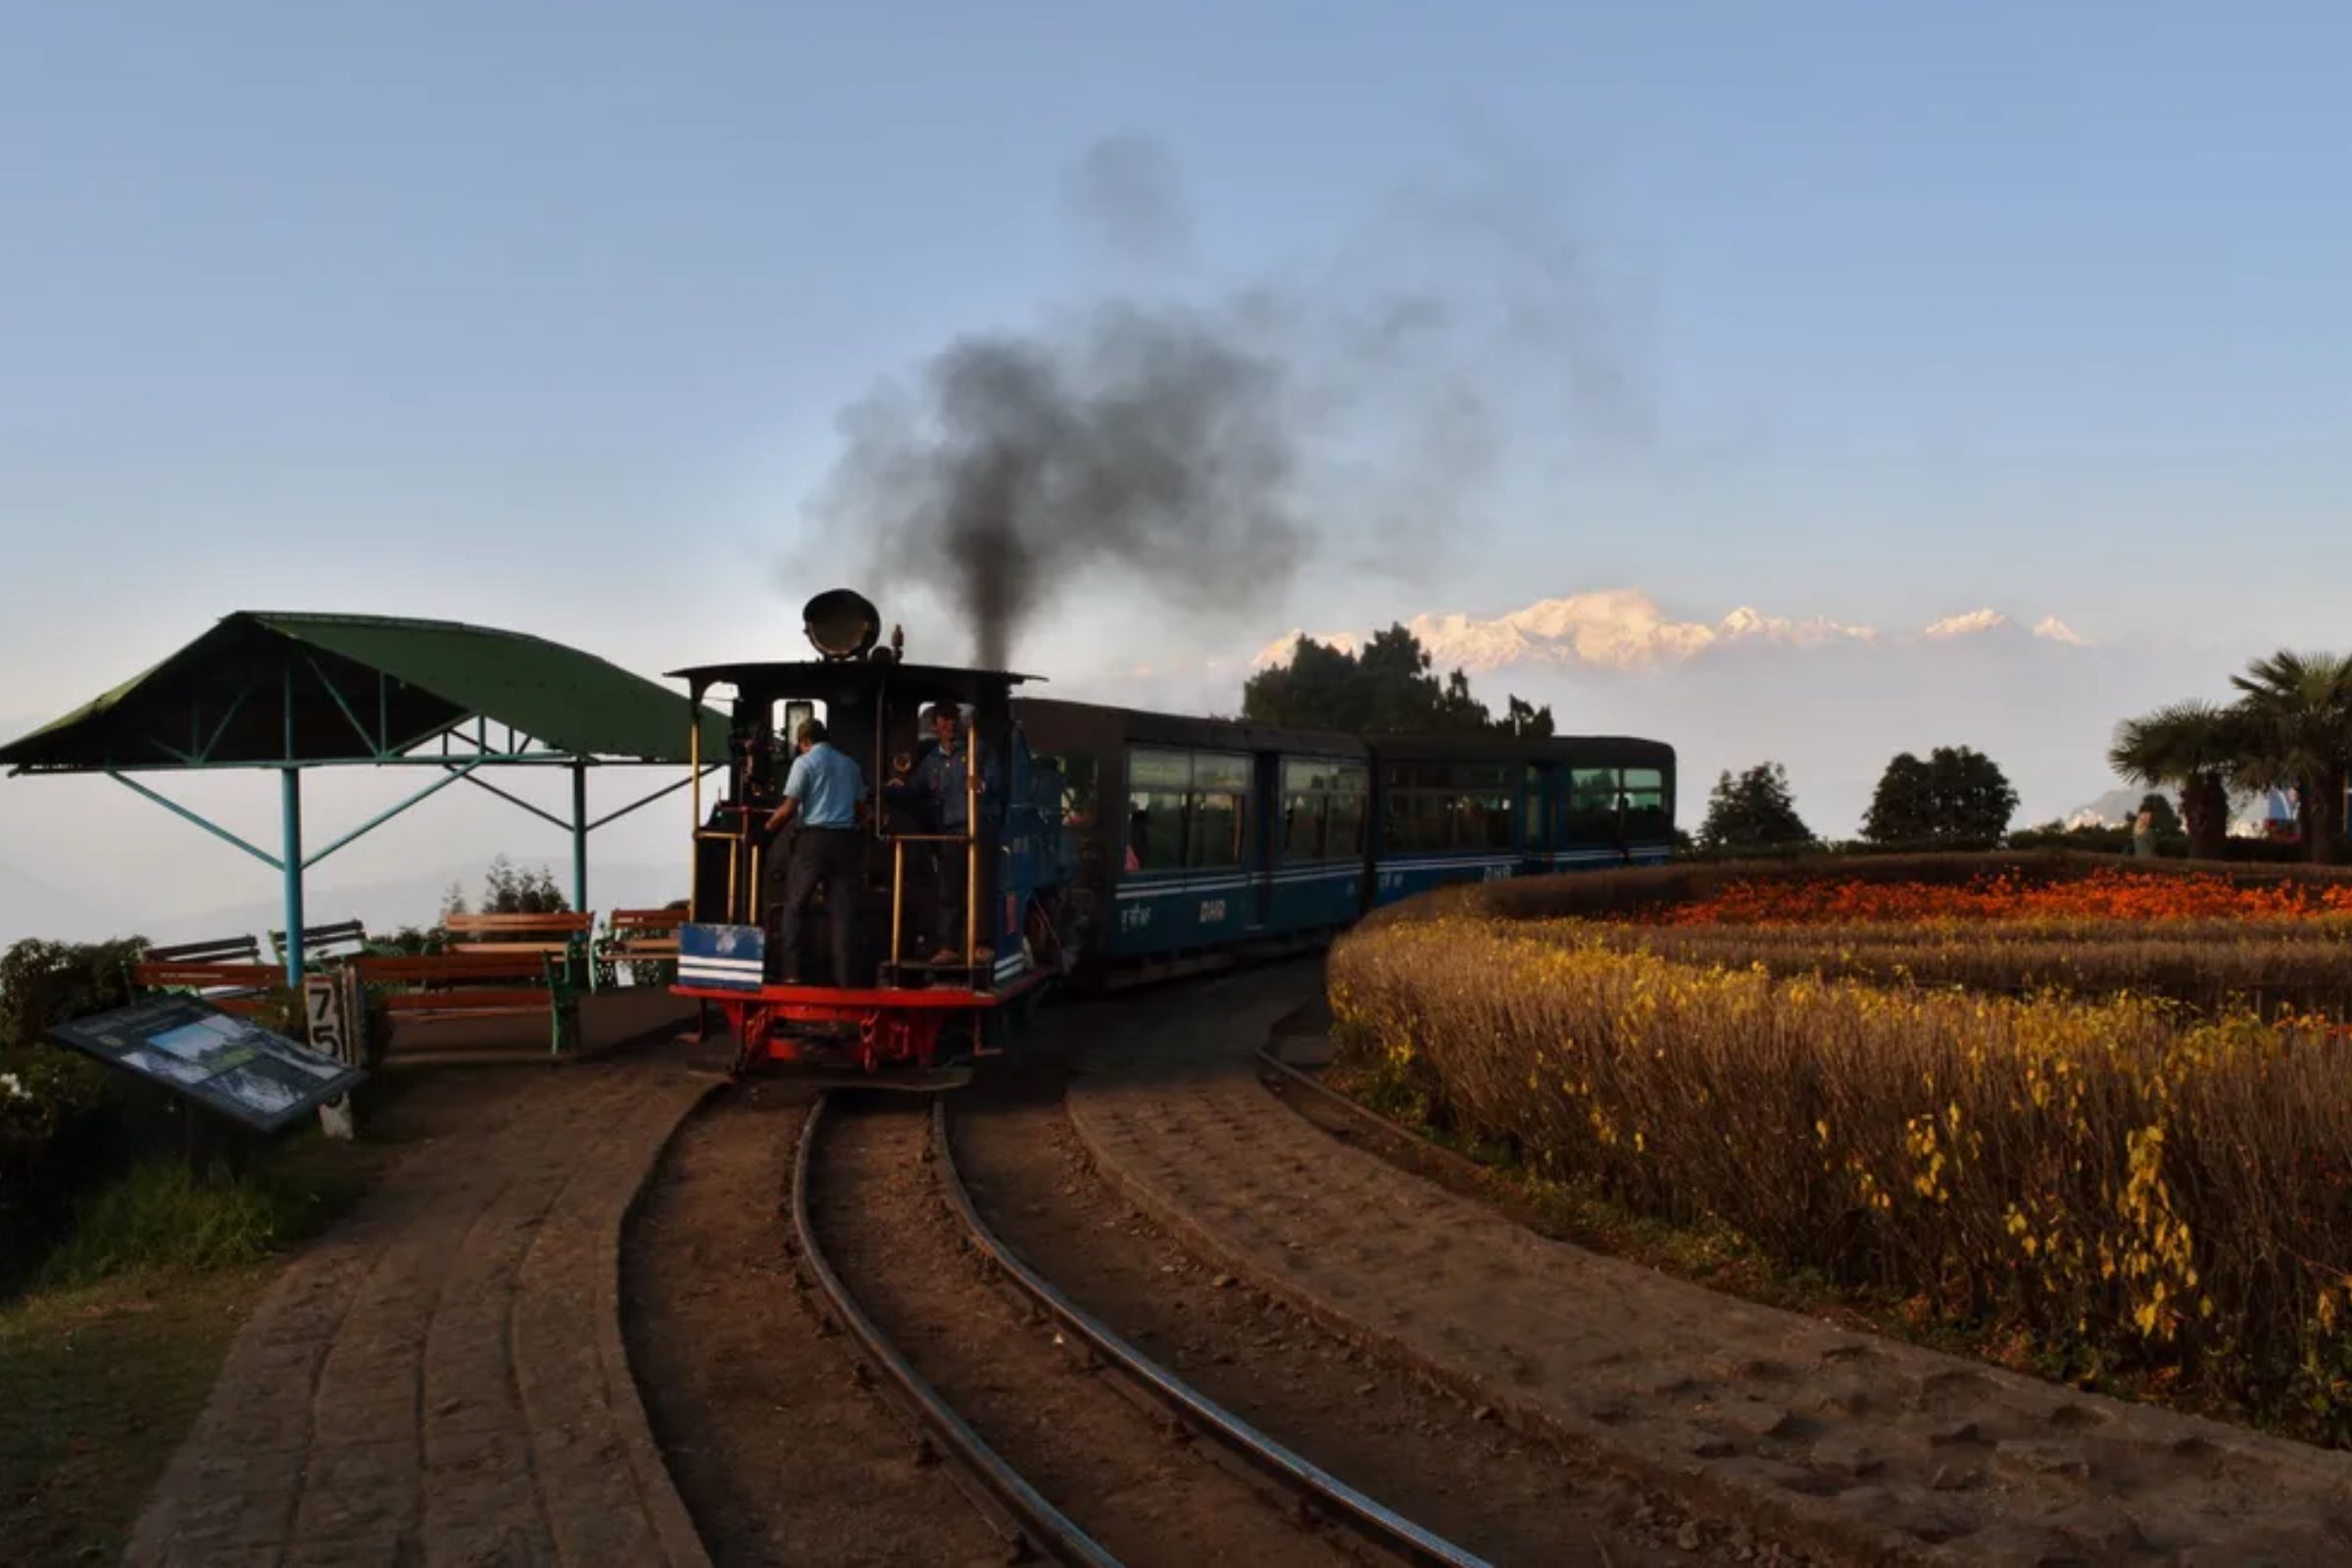 Toy train Darjeeling